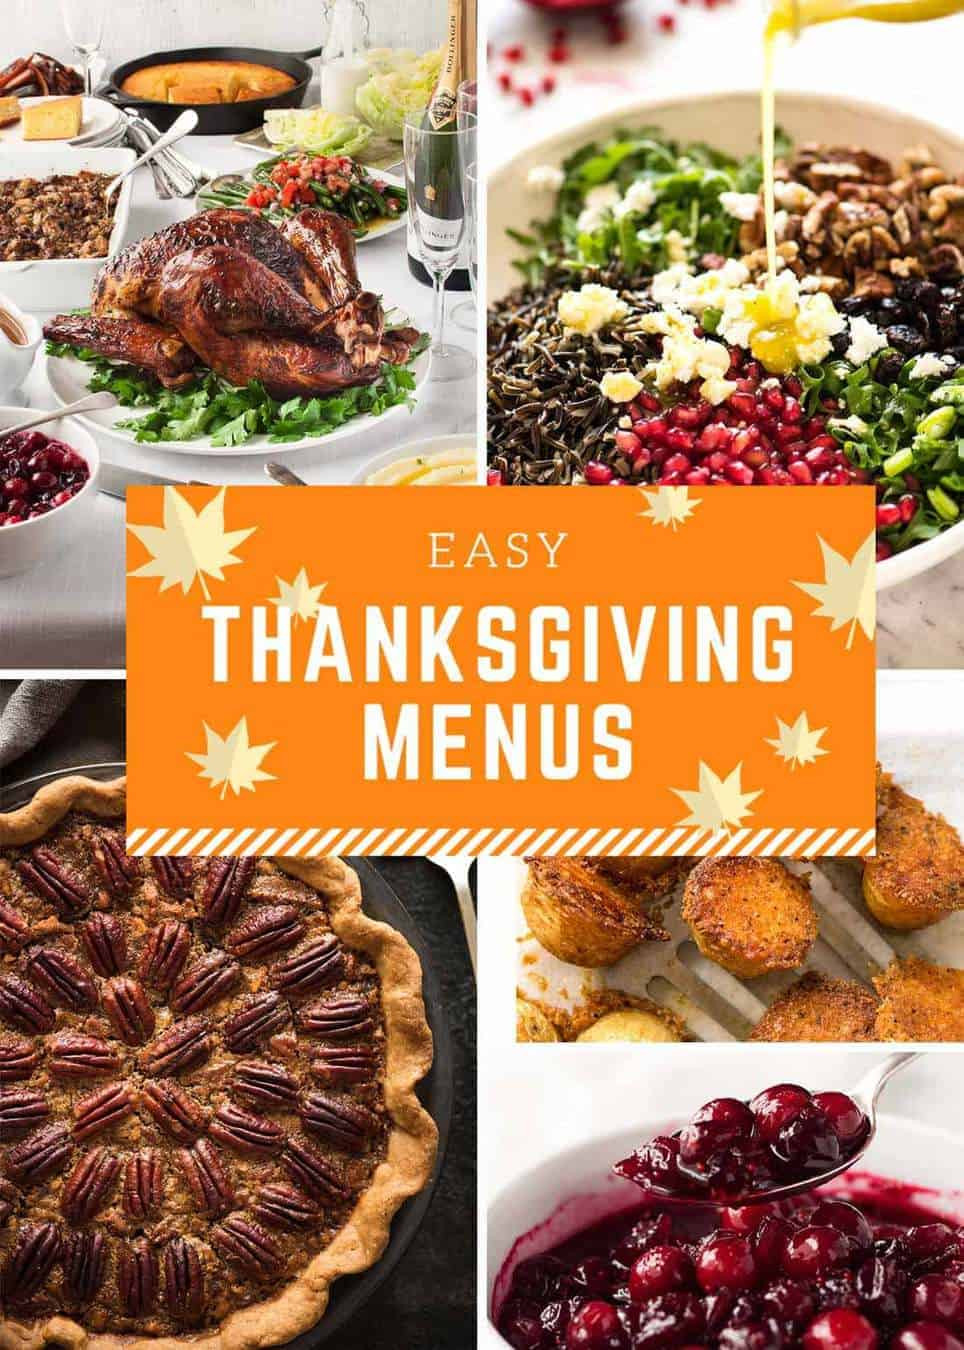 Easy Thanksgiving Food
 Easy Thanksgiving Menus